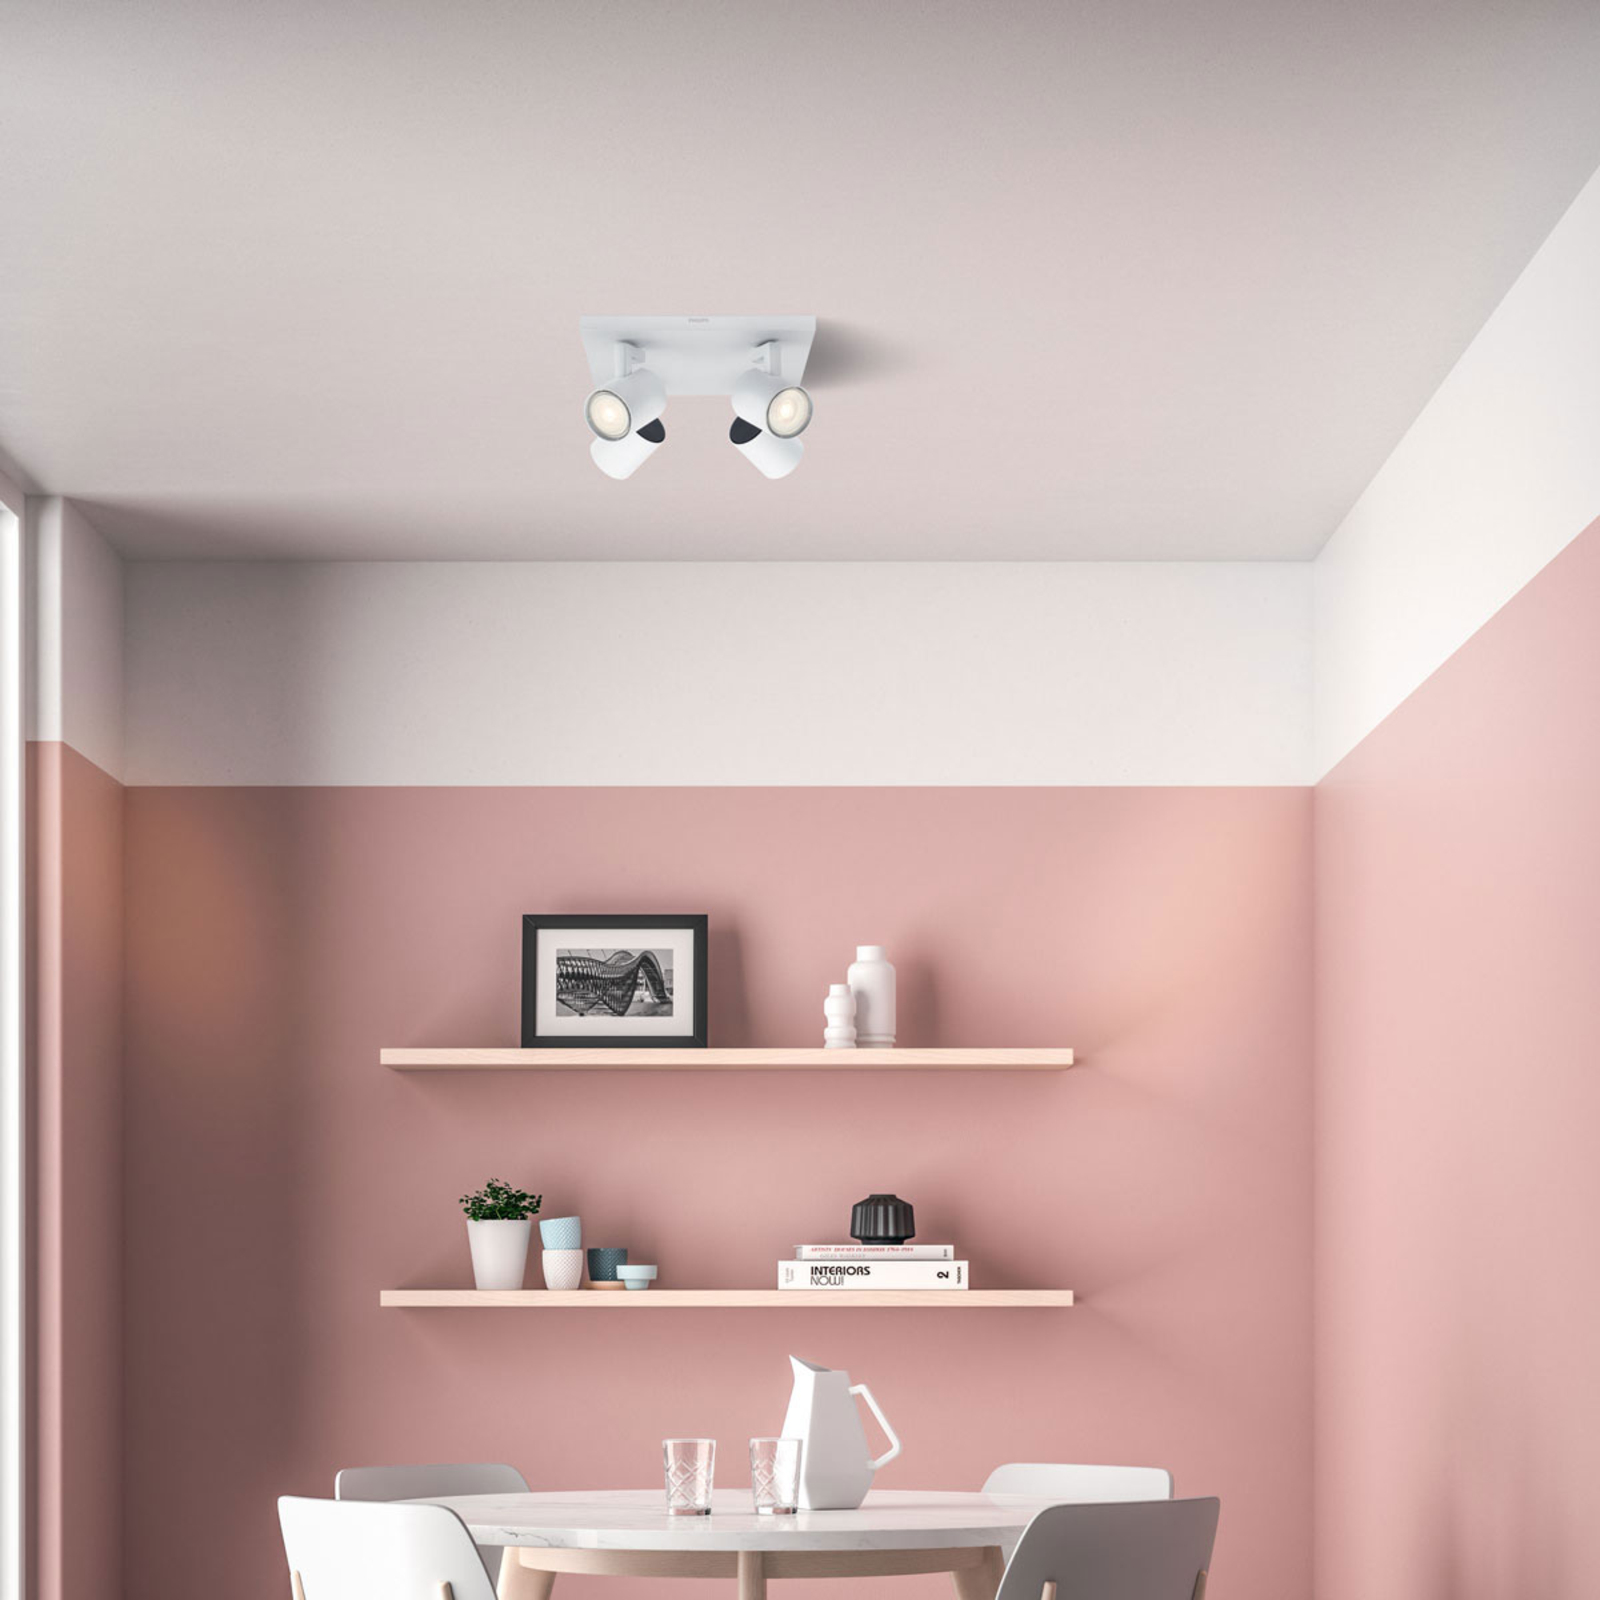 Binnenshuis Editor Dank je Philips Runner LED ceiling light white 4-bulb | Lights.co.uk